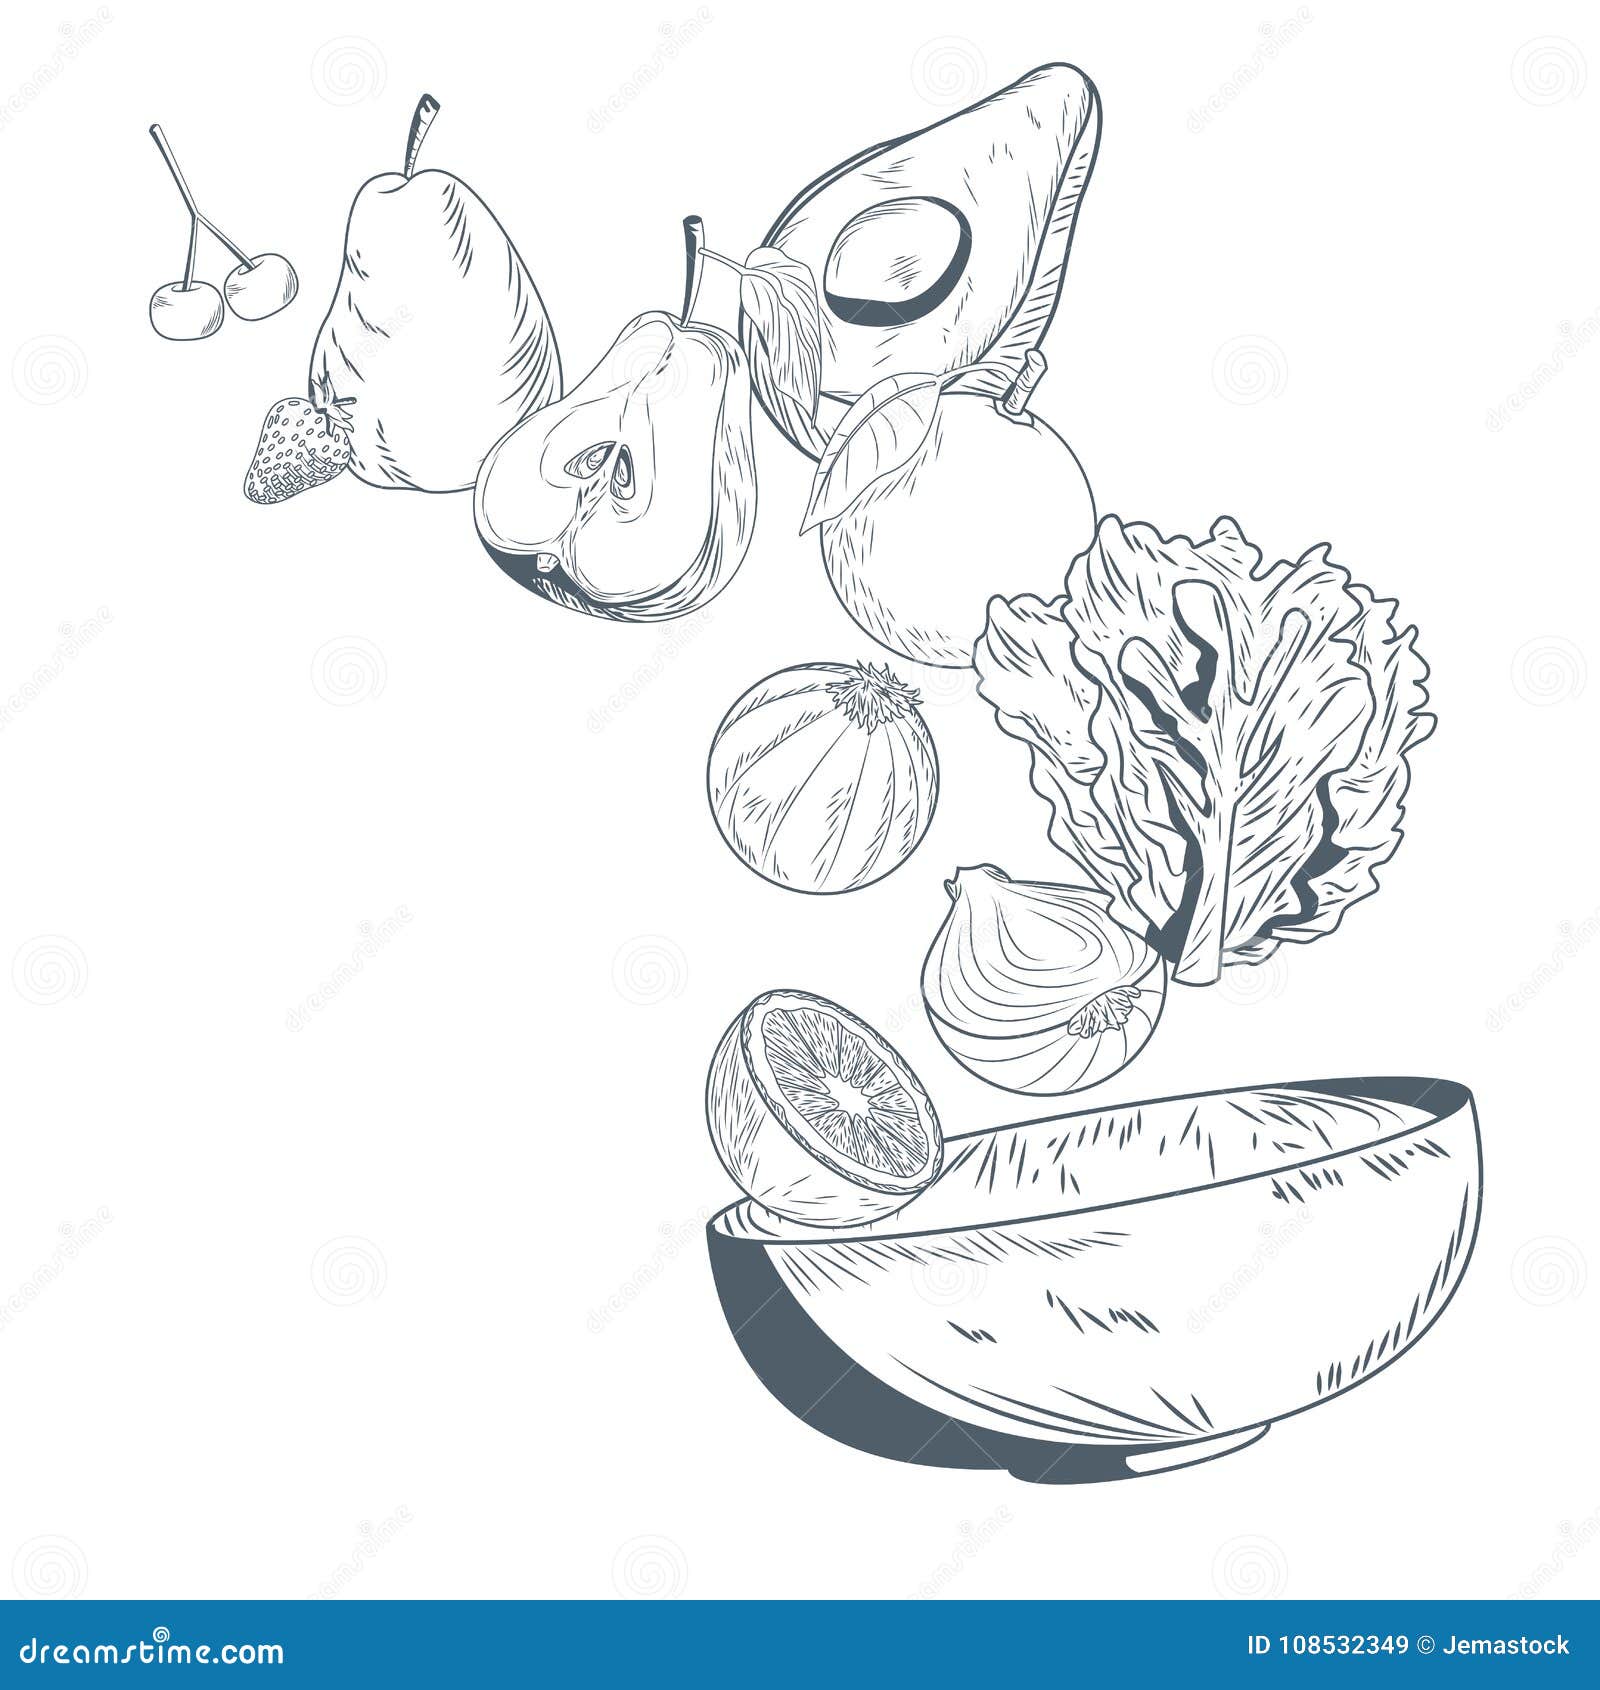 Fruit Bowl Drawing N2 free image download